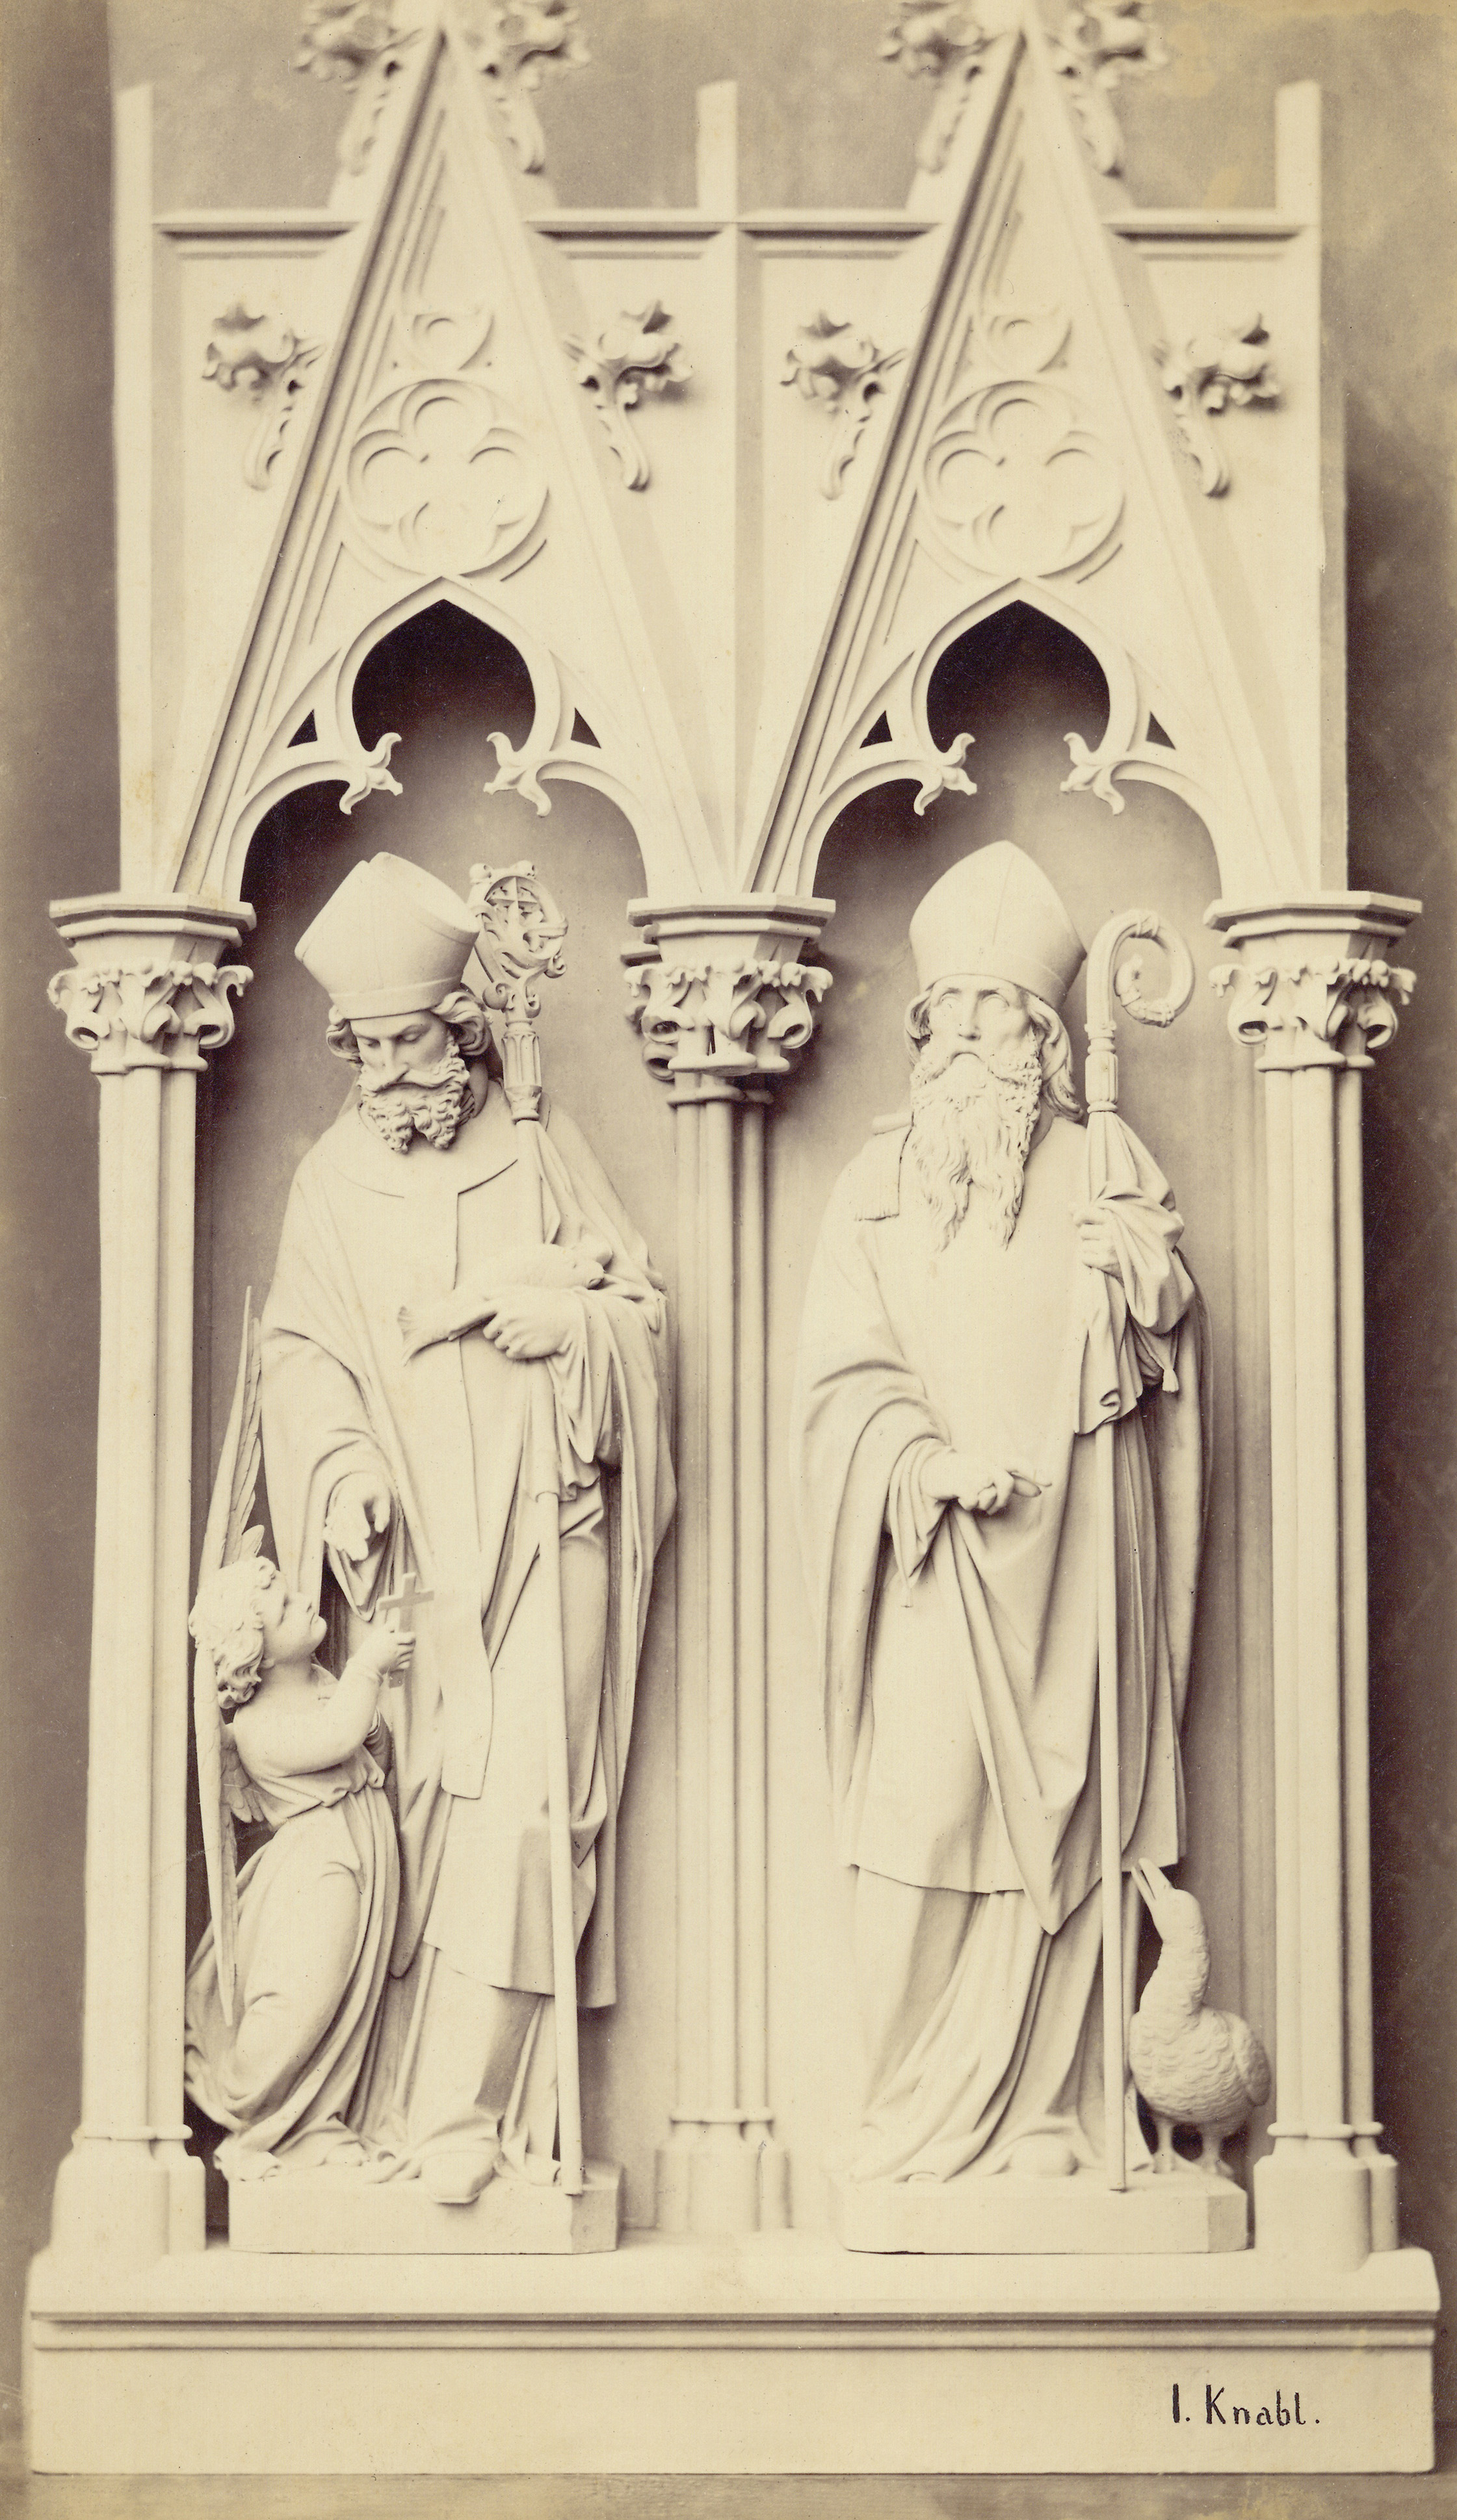 Joseph Knabl (1819 – 1881), Zwei heilige Bischöfe II, undatiert, derzeit unbekannter Standort, signiert unten rechts: „I. Knabl.“, Photographie, 2. H. 19. Jahrhundert, Museum Fließ